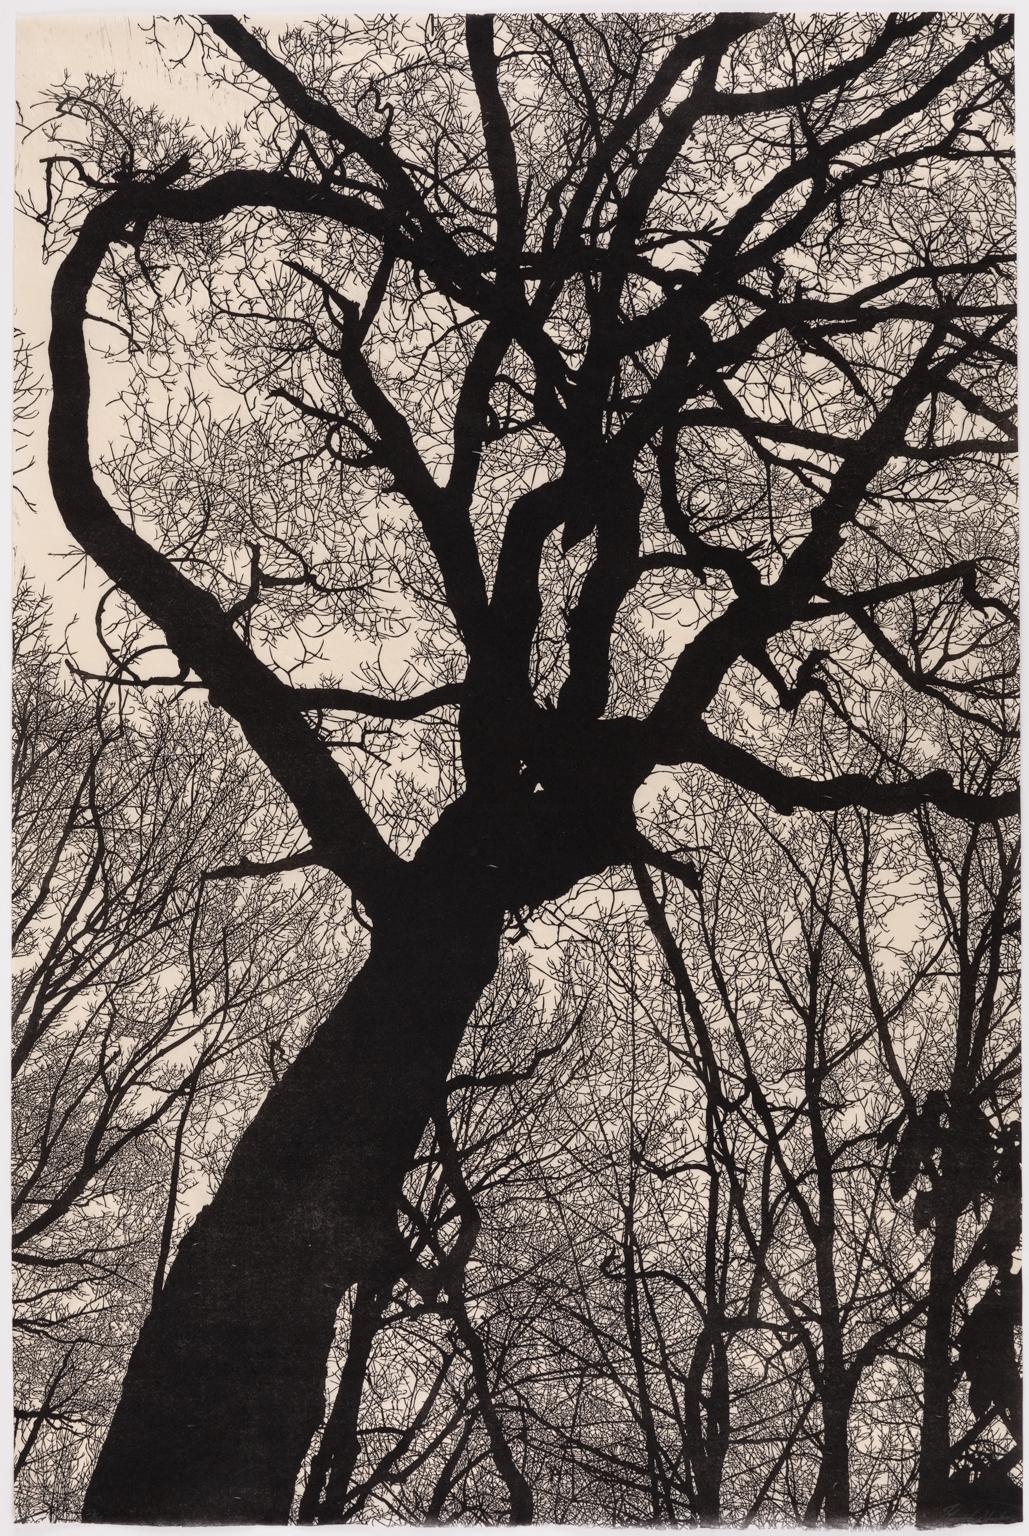 Nacht Descends on Mountain – Gerahmter Linolschnitt-Druck einer Baum-Silhouette